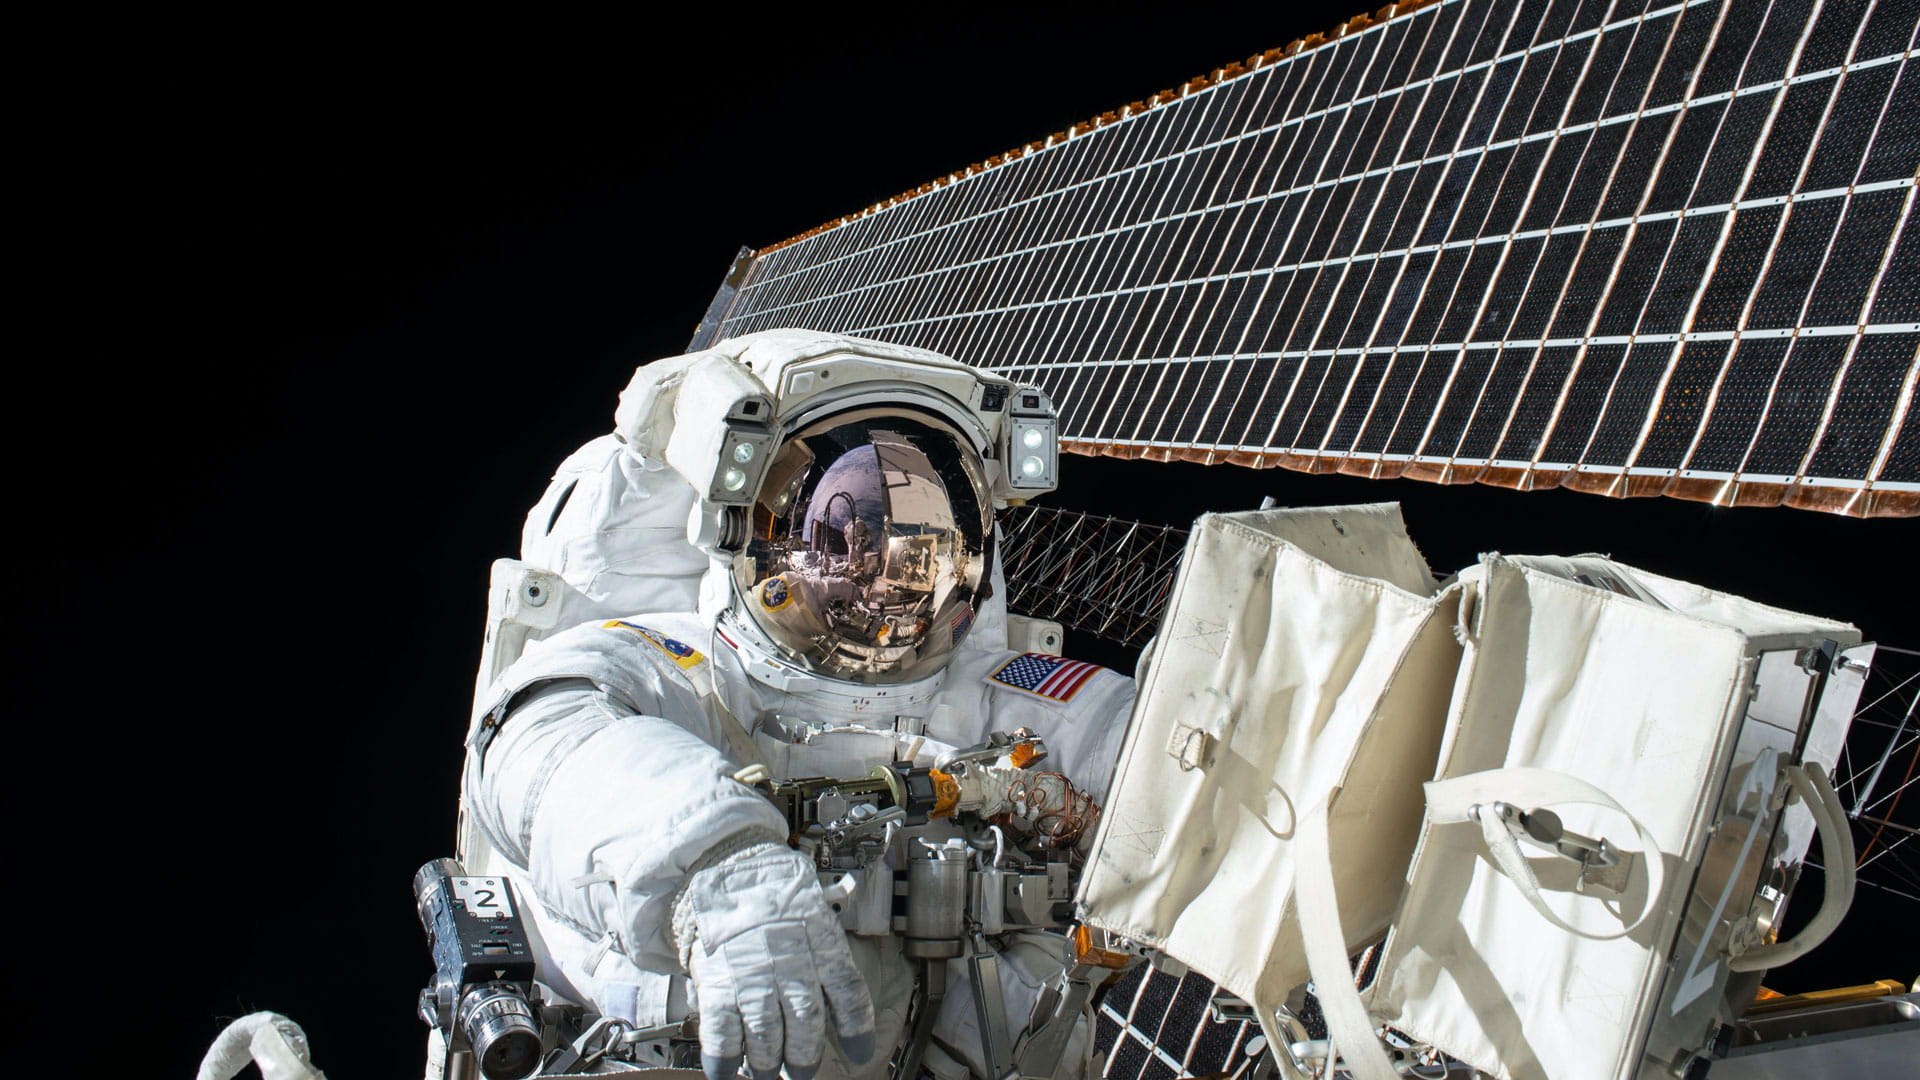 An astronaut during a spacewalk